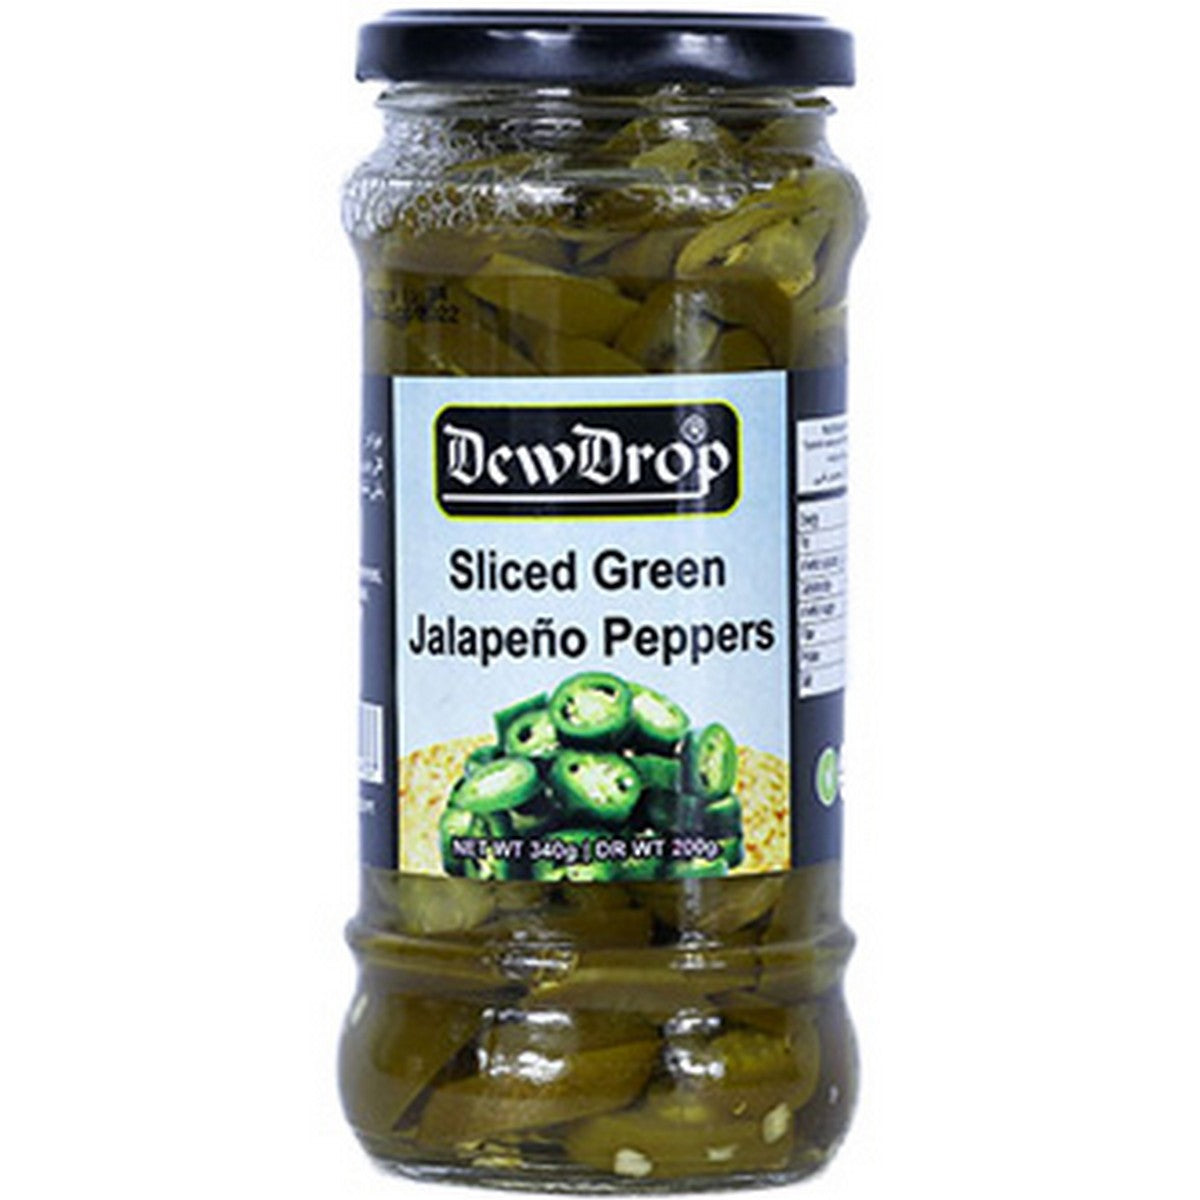 Dewdrop - Jalapeno - Sliced - Green - 340g - Bottle - Pack Of 12